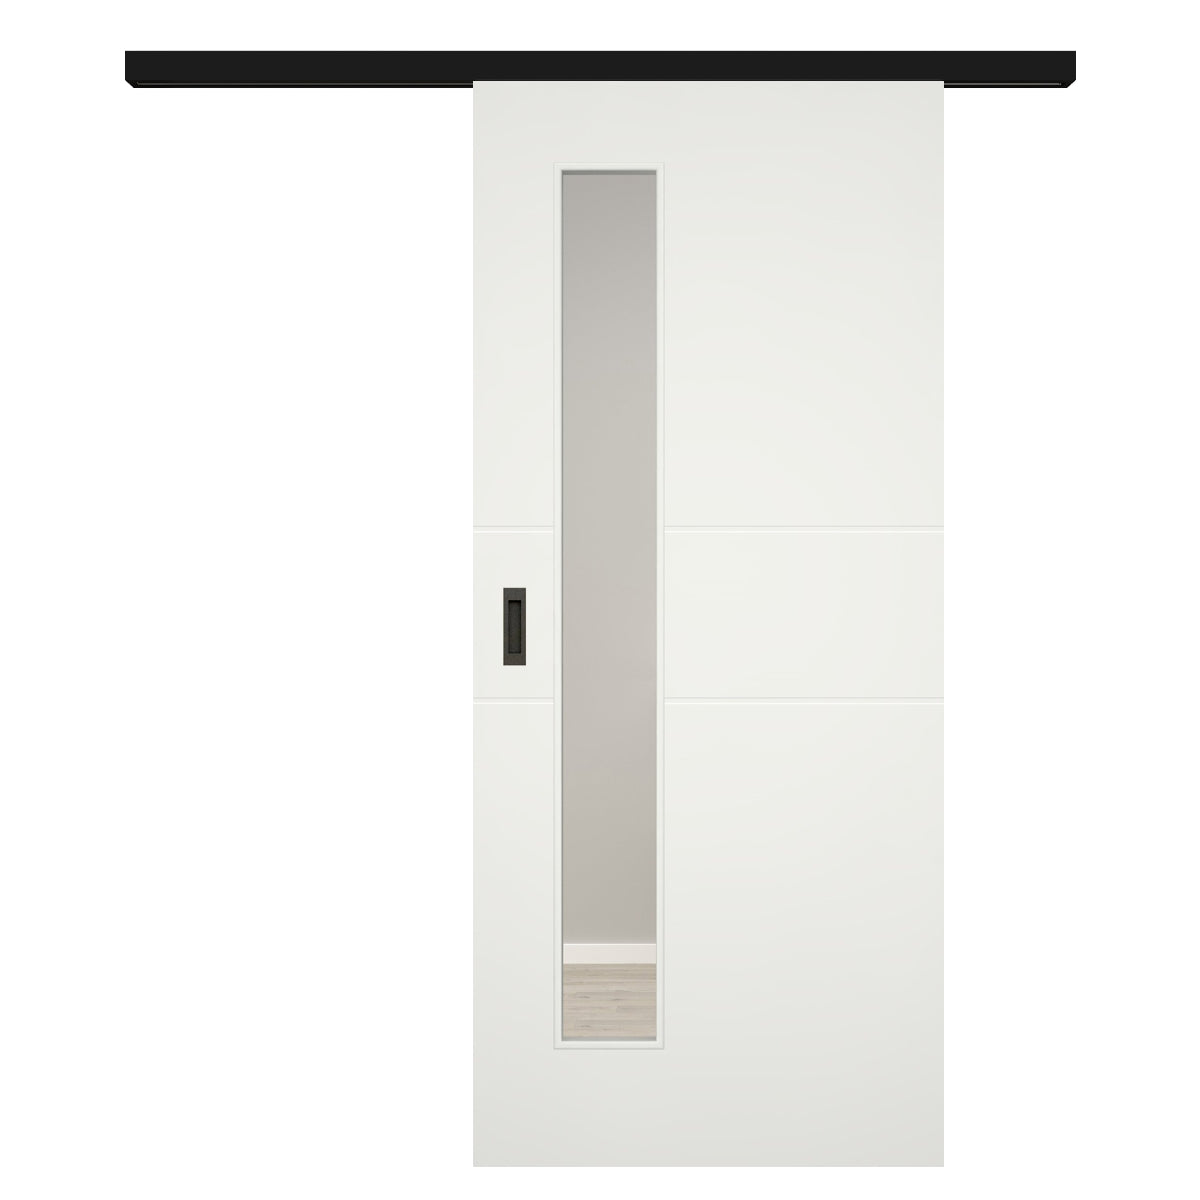 Schiebetür für Set mit schwarzem Laufkasten mit Lichtausschnittsoft-weiß 2 Rillen - Modell Designtür Q21LAS